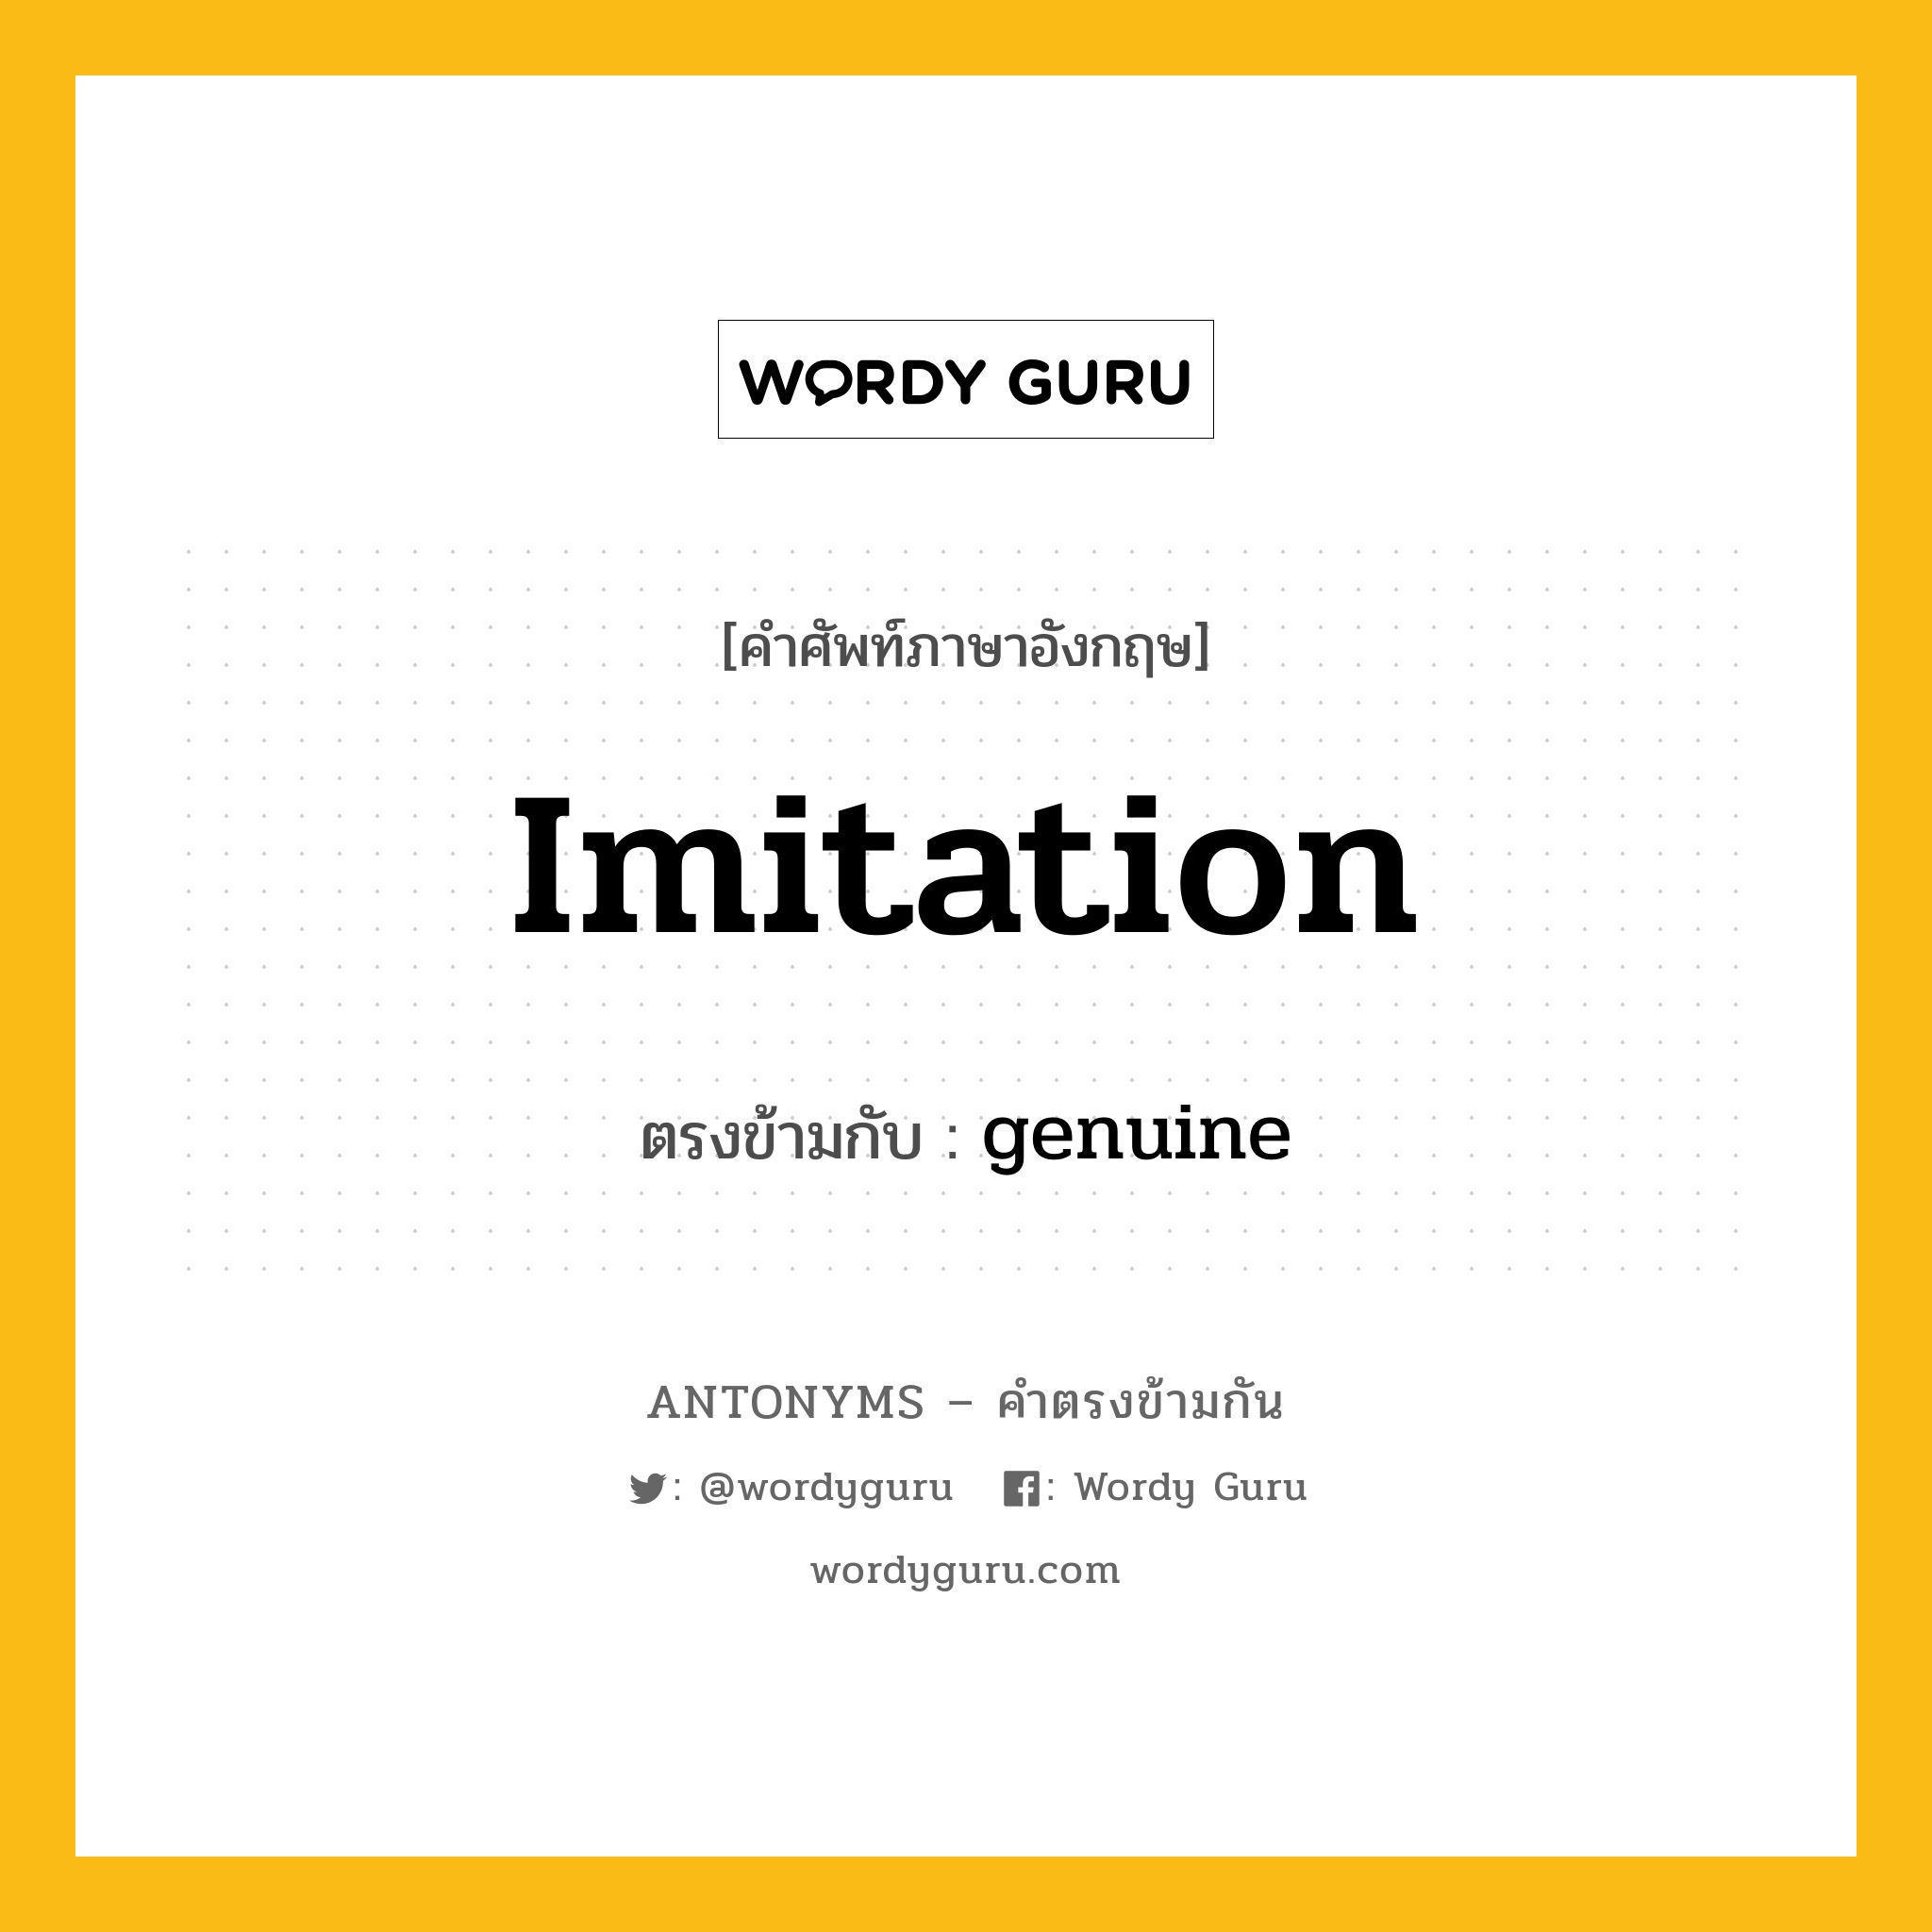 imitation เป็นคำตรงข้ามกับคำไหนบ้าง?, คำศัพท์ภาษาอังกฤษ imitation ตรงข้ามกับ genuine หมวด genuine